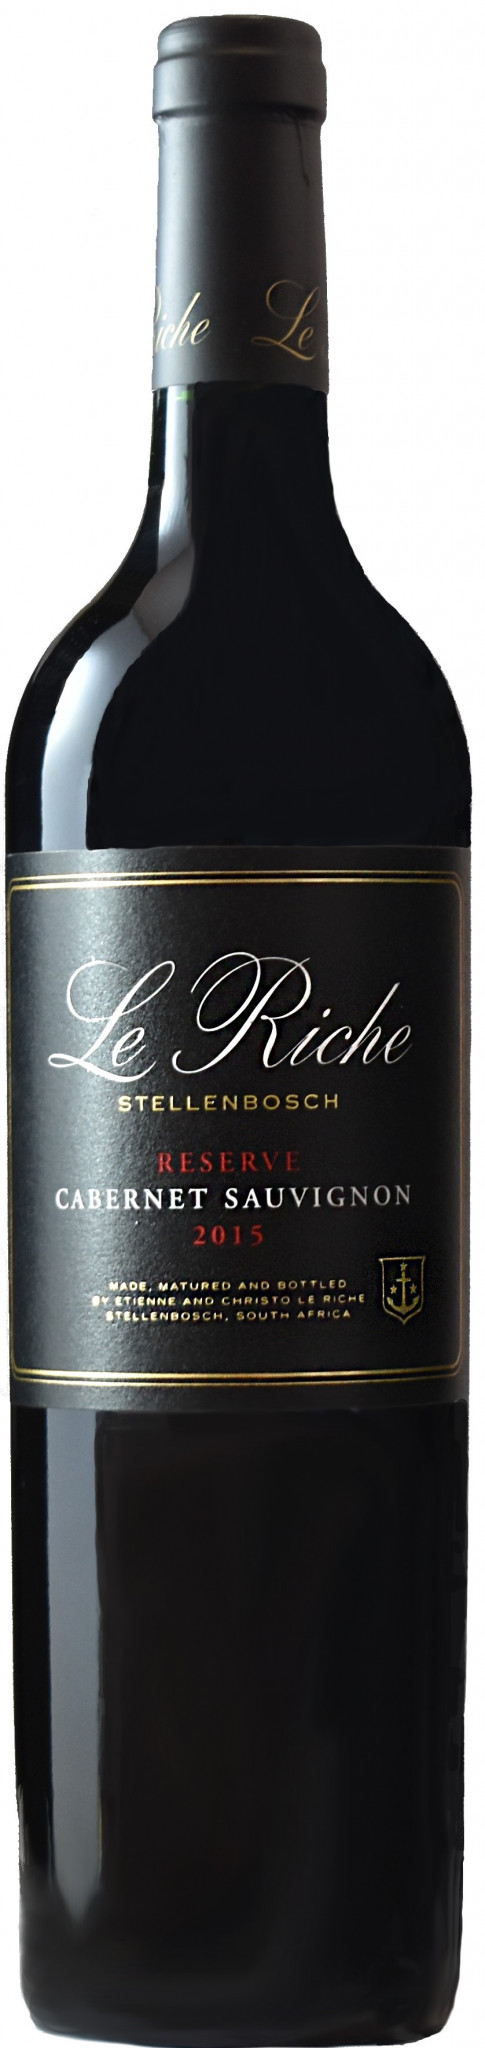 Le Riche Reserve Cabernet Sauvignon_wineaffair